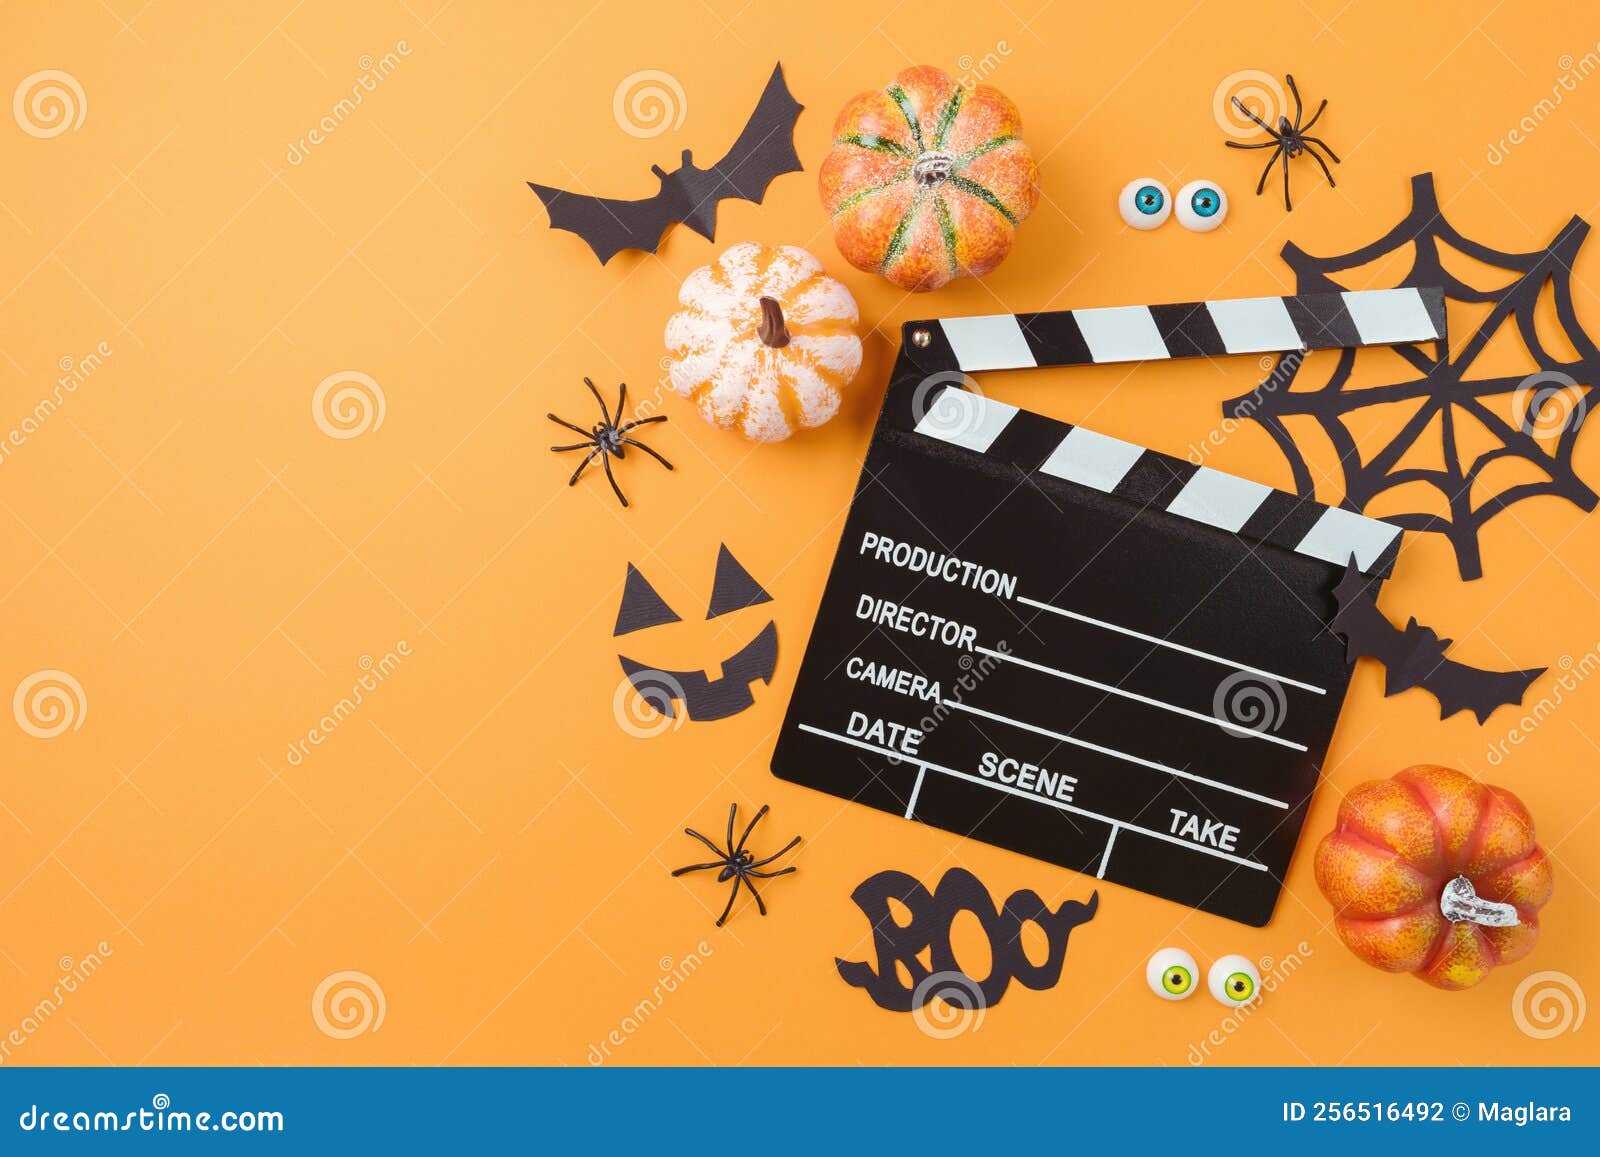 Halloween 2023 no cinema: a nossa seleção de filmes de terror e